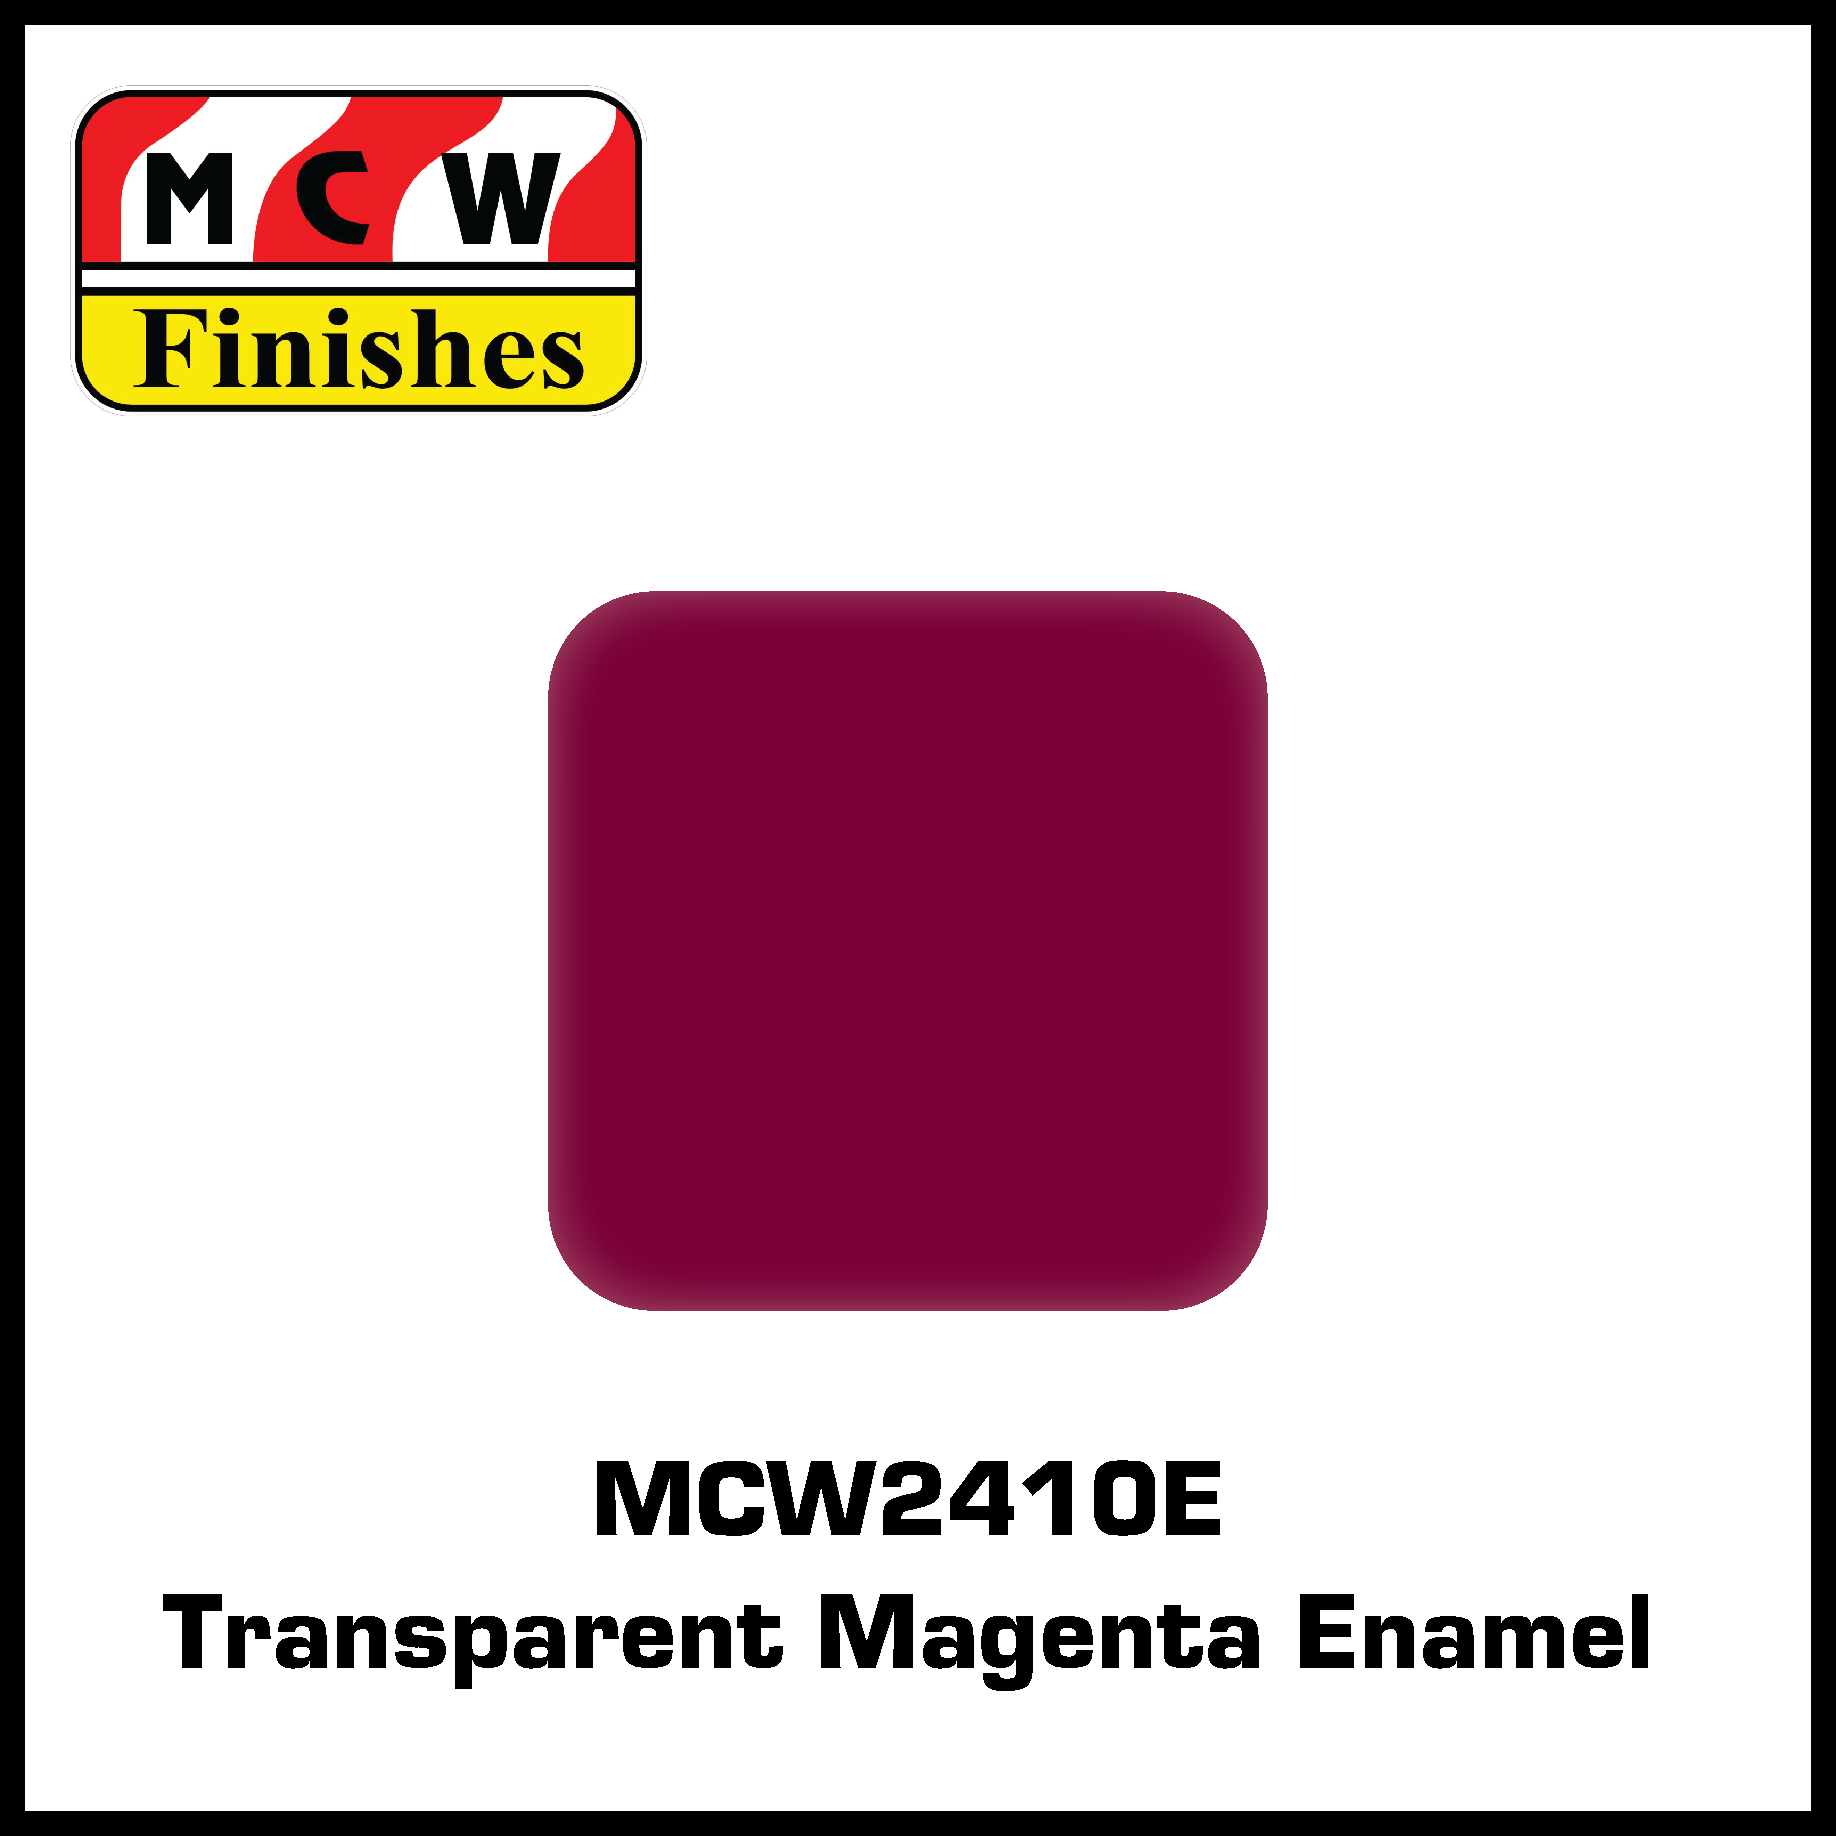 MCW Finishes 2410E Transparent Magenta Enamel